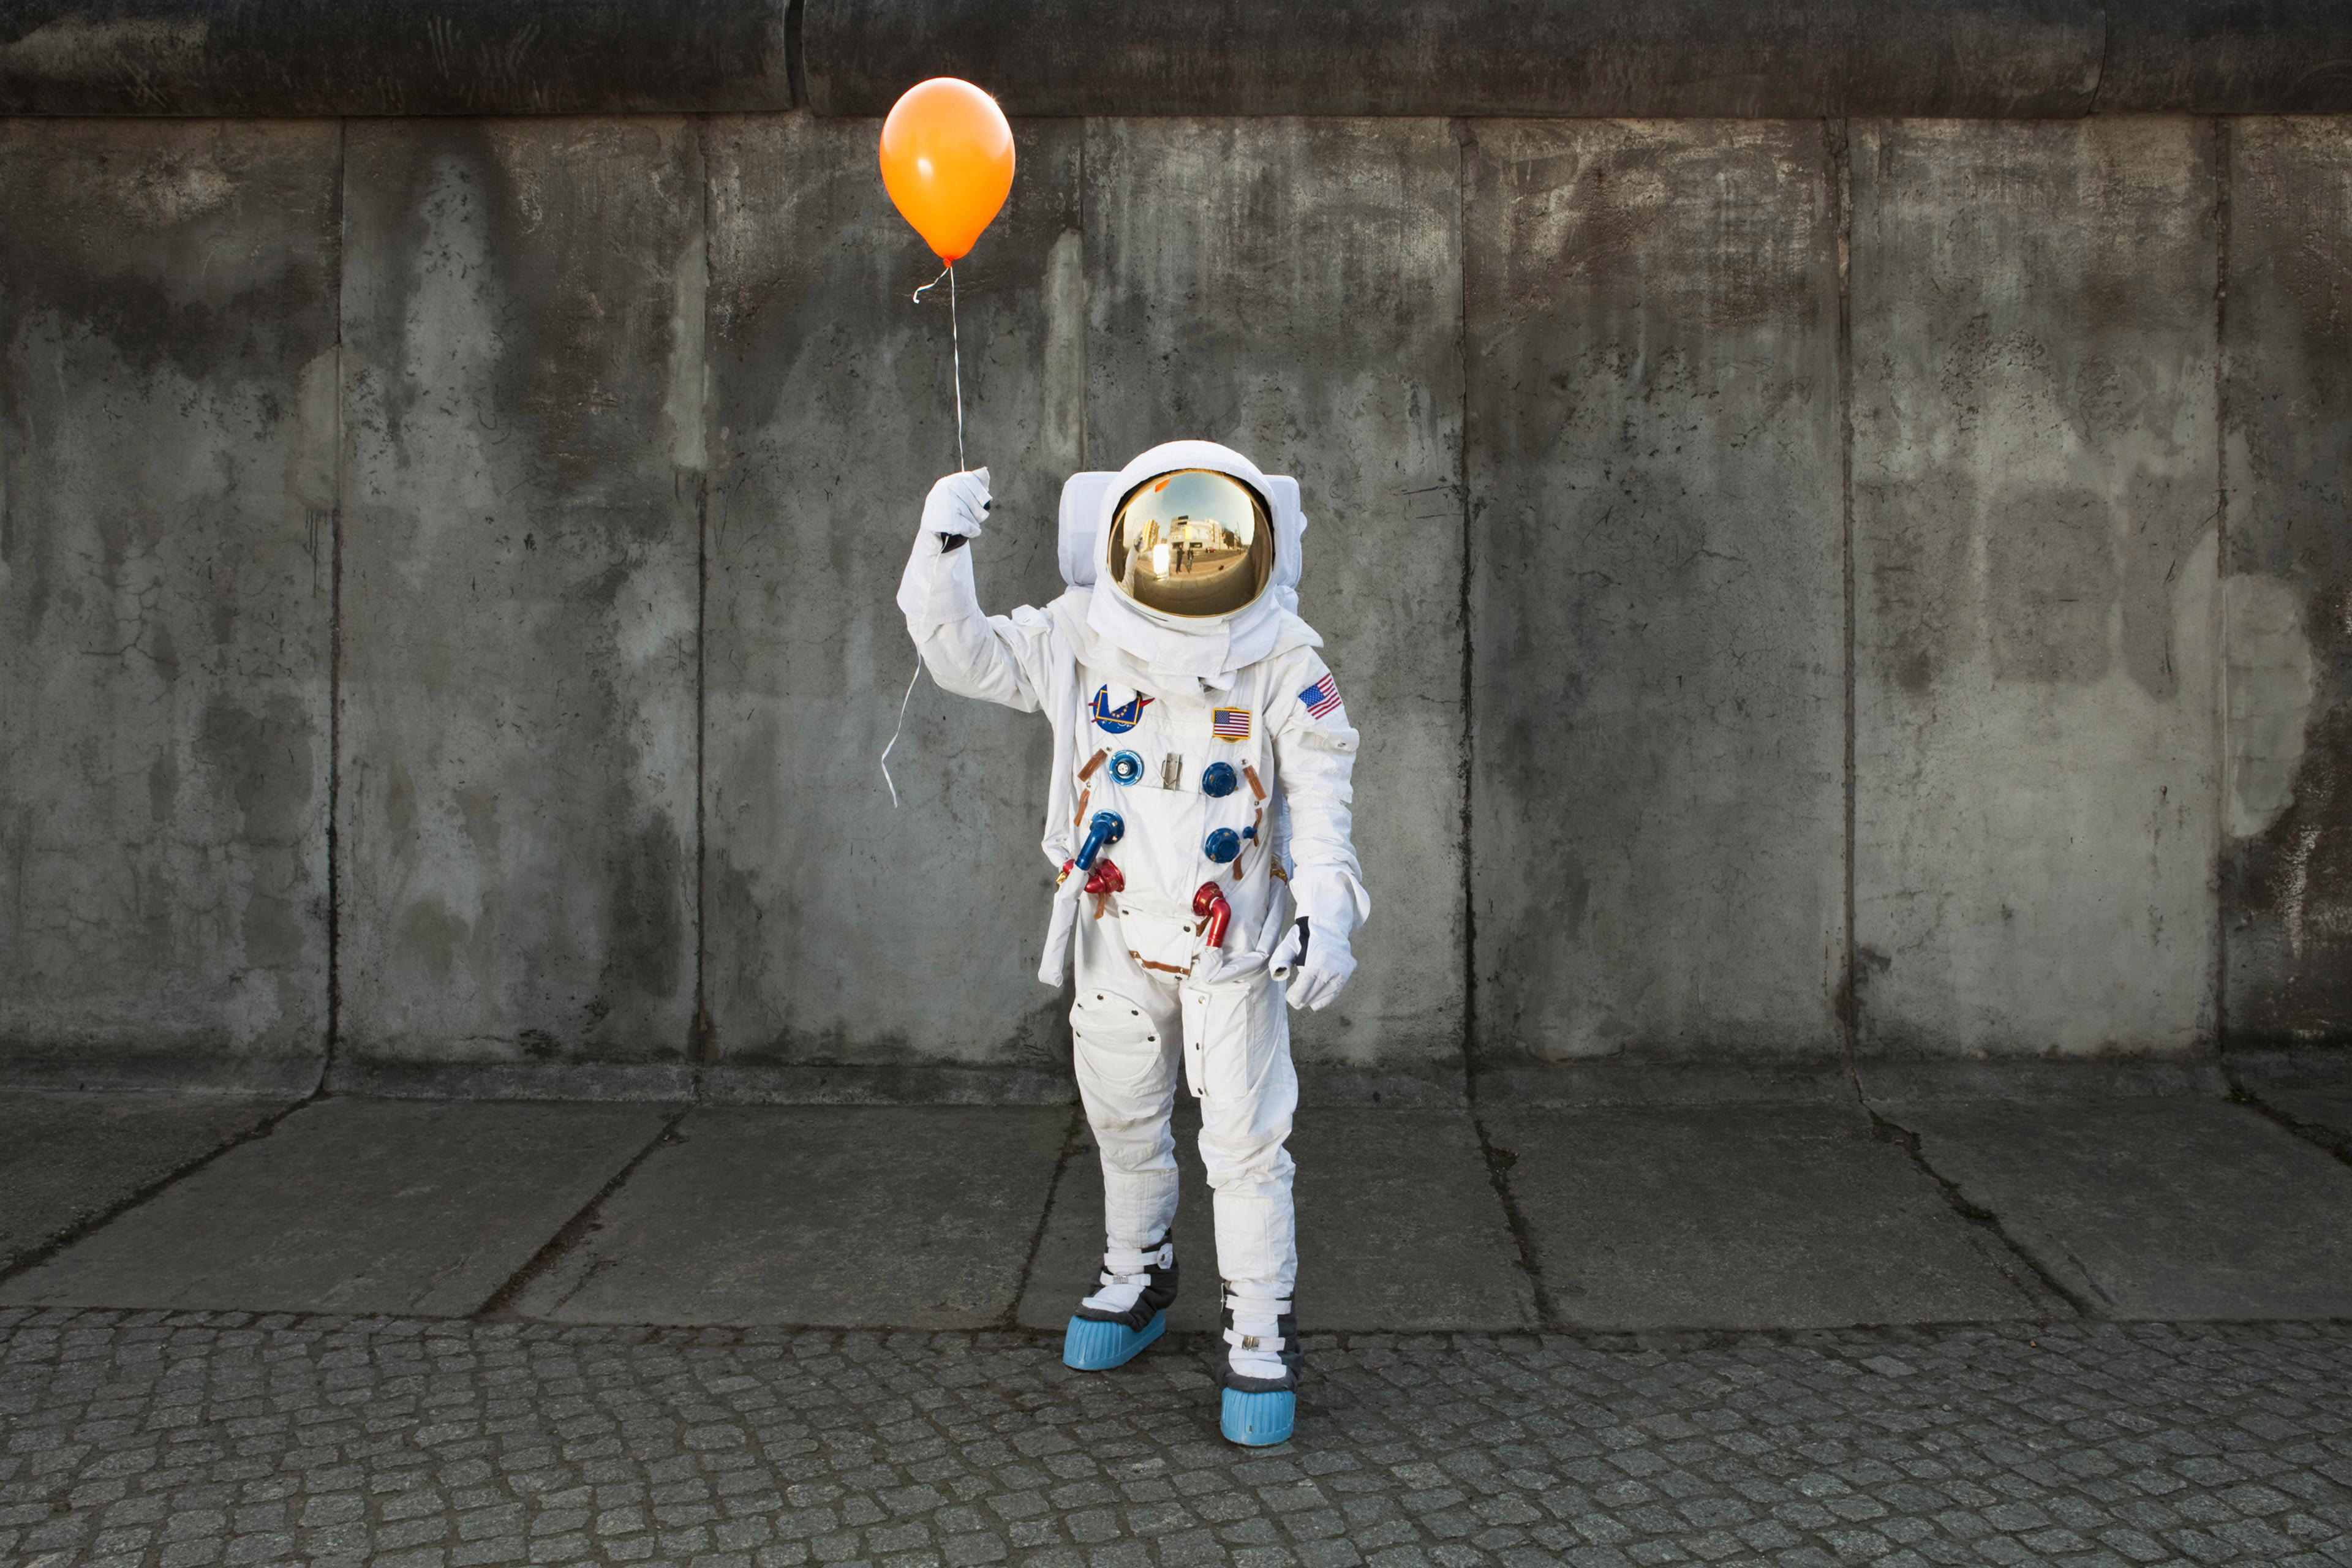 Ein Astronaut mit einem Luftballon auf dem Bürgersteig einer Stadt